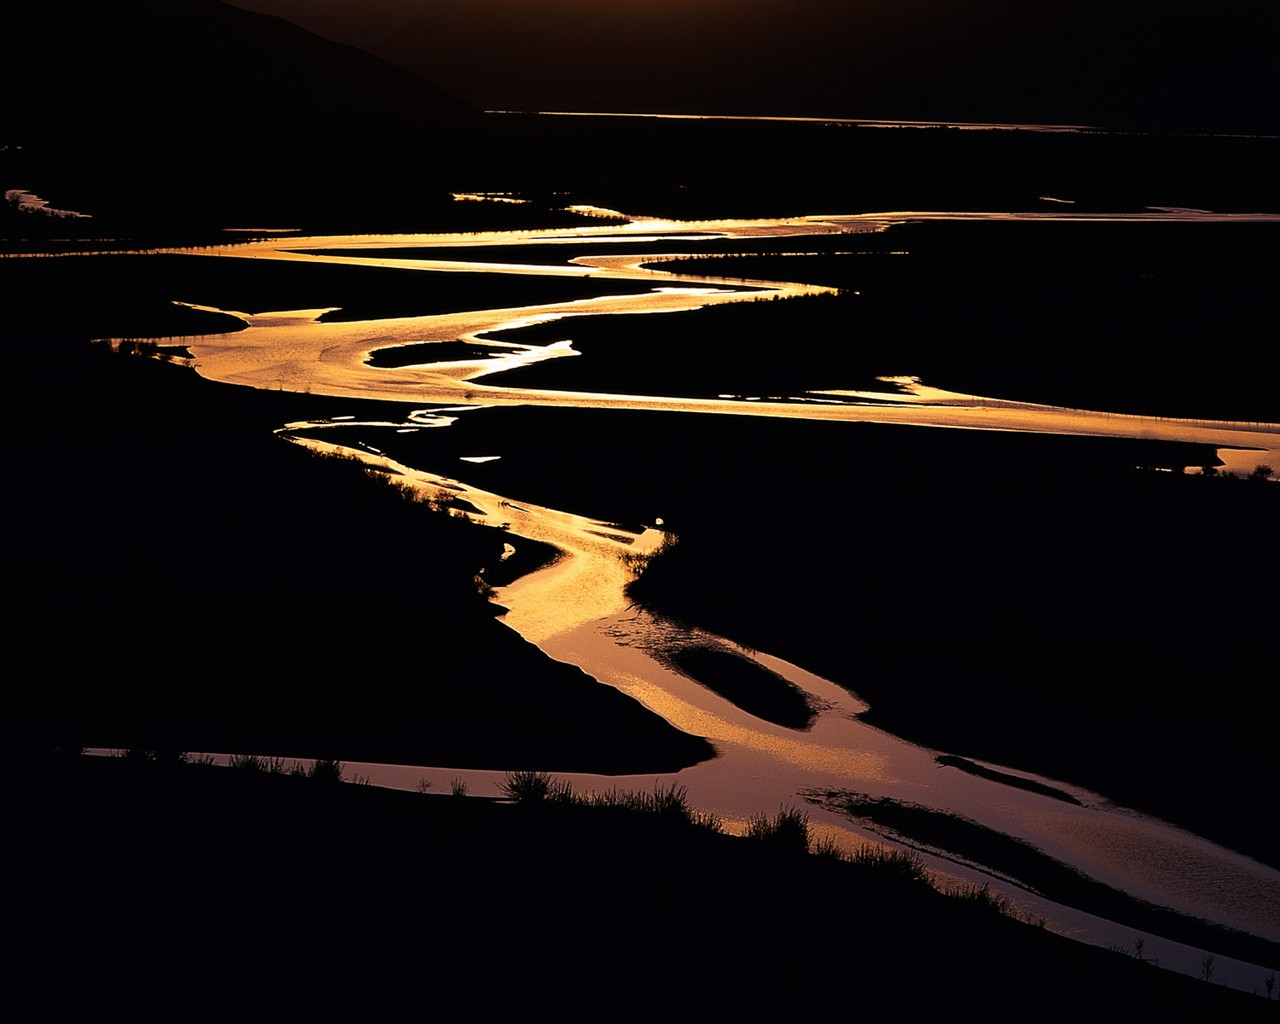 Fond d'écran paysage exquis chinois #12 - 1280x1024